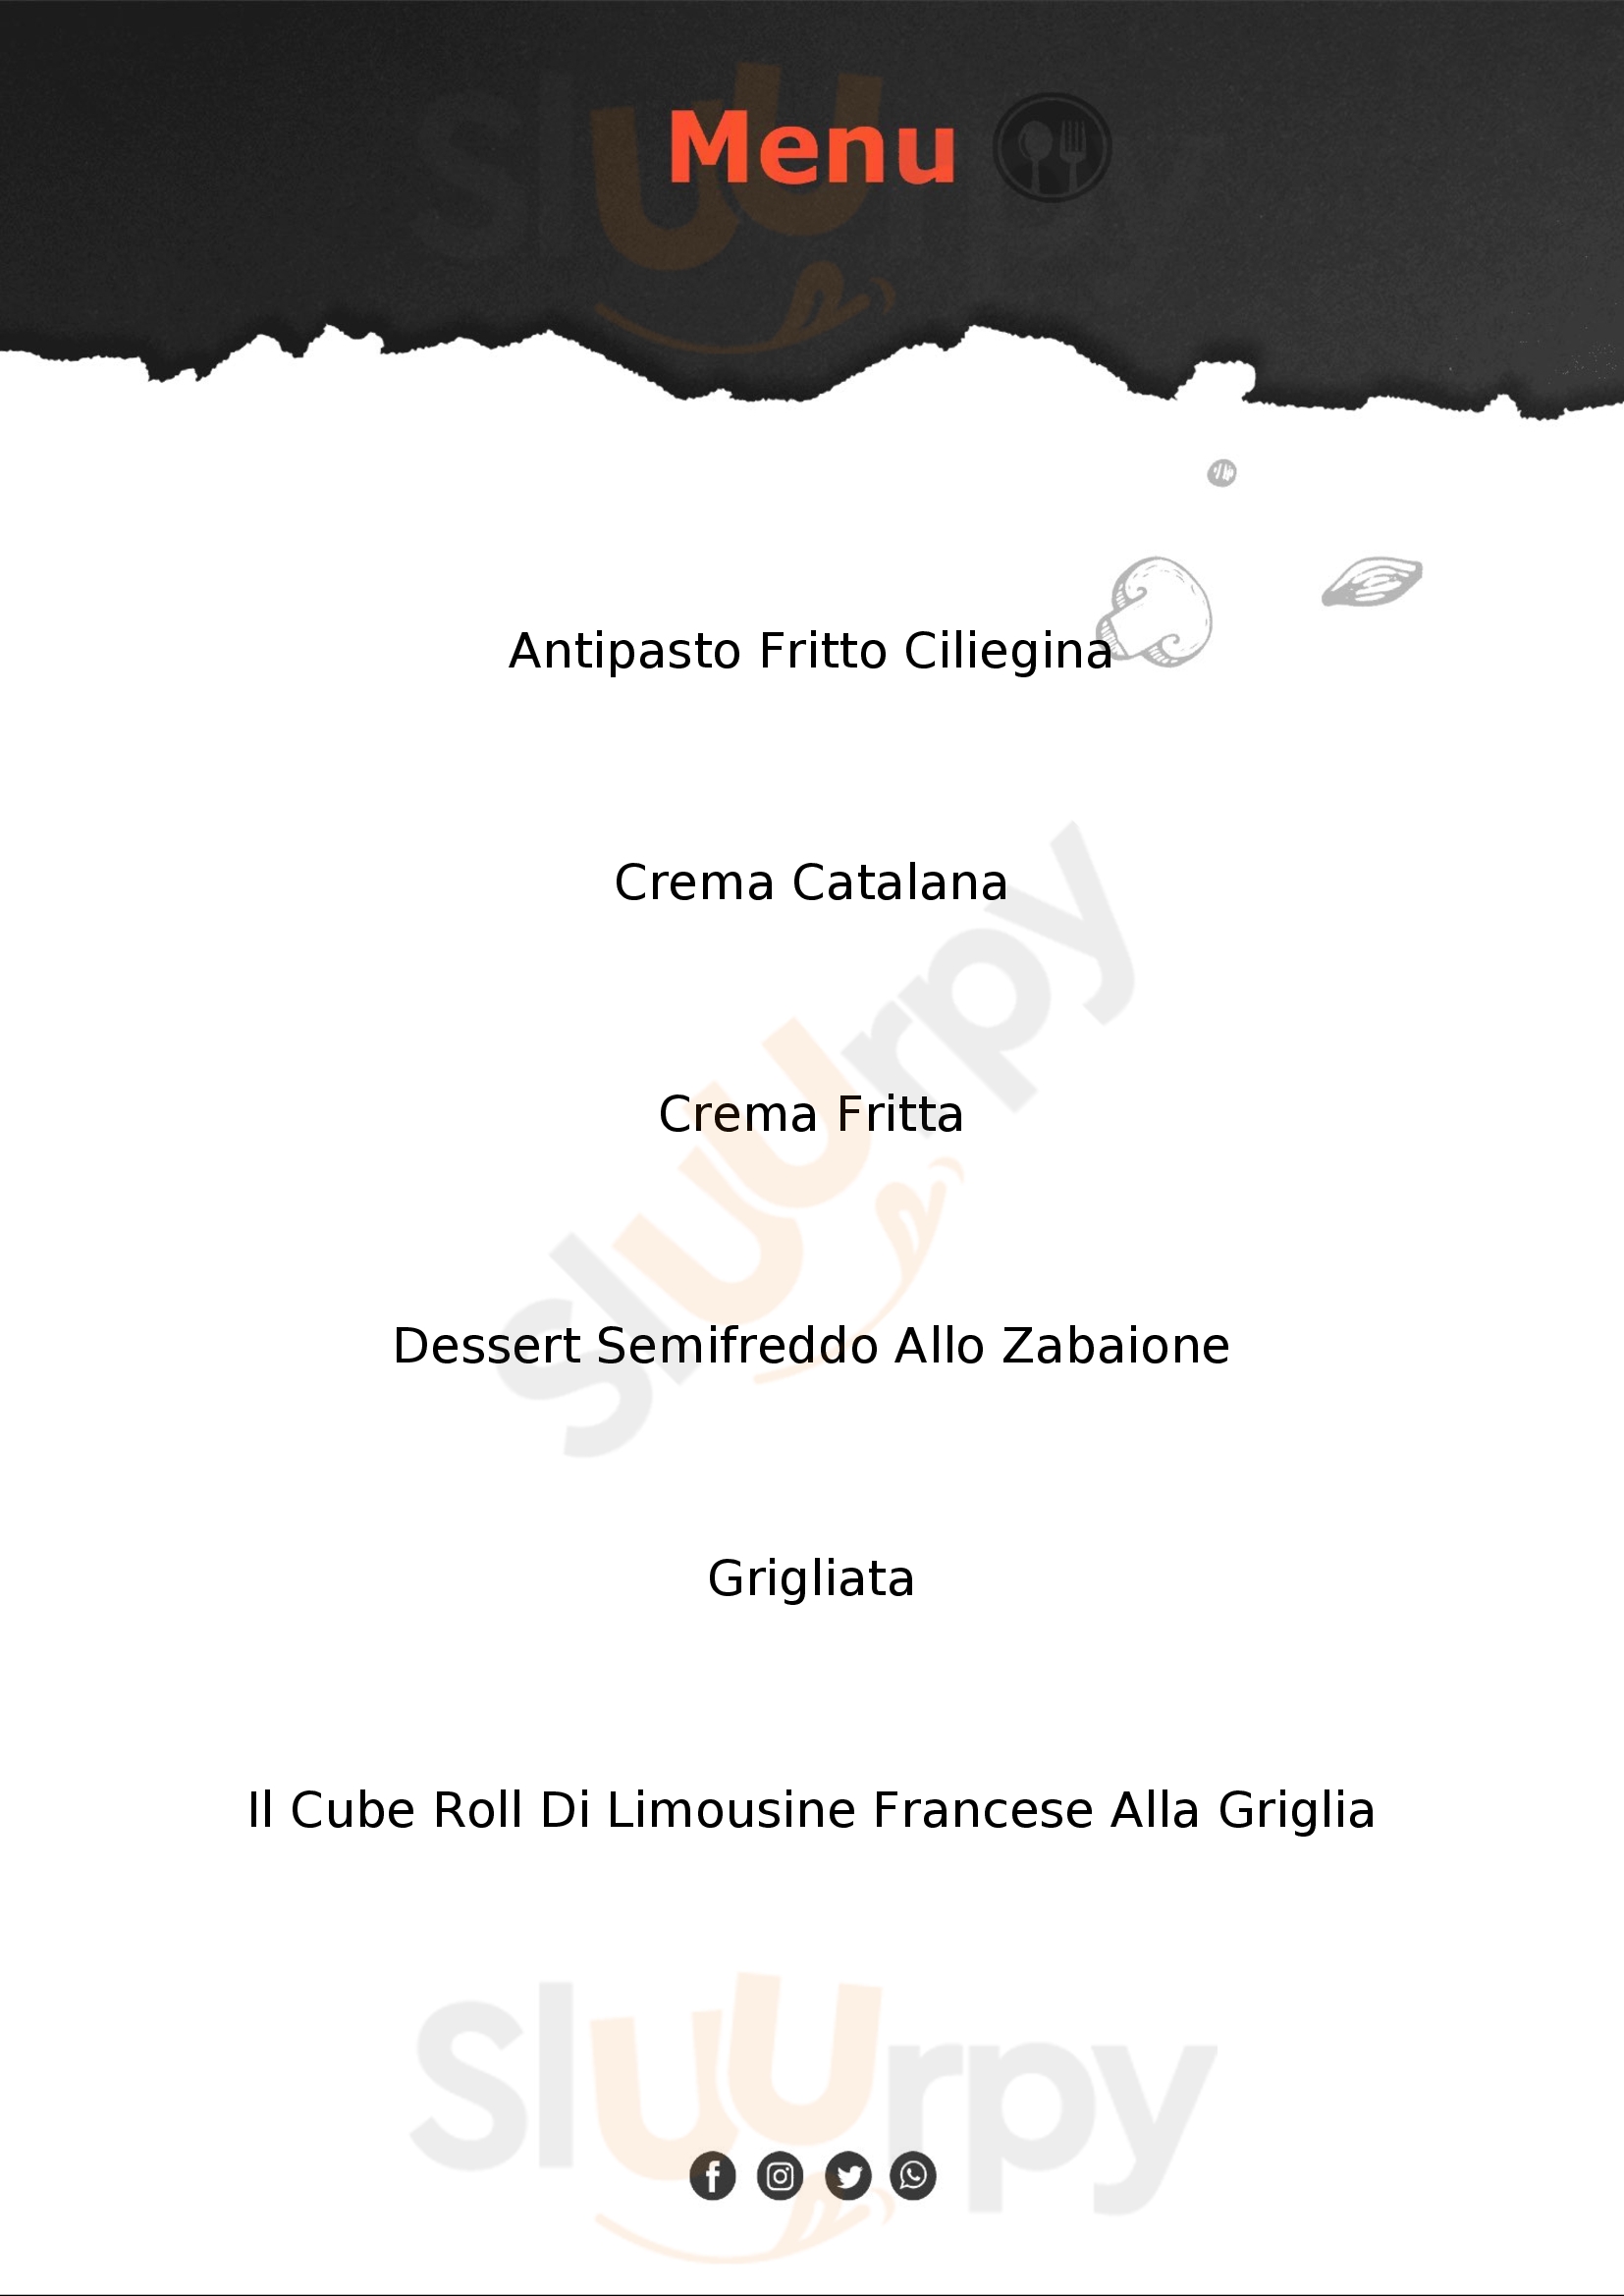 La Ciliegina Caffe & Cucina Castel San Pietro Terme menù 1 pagina